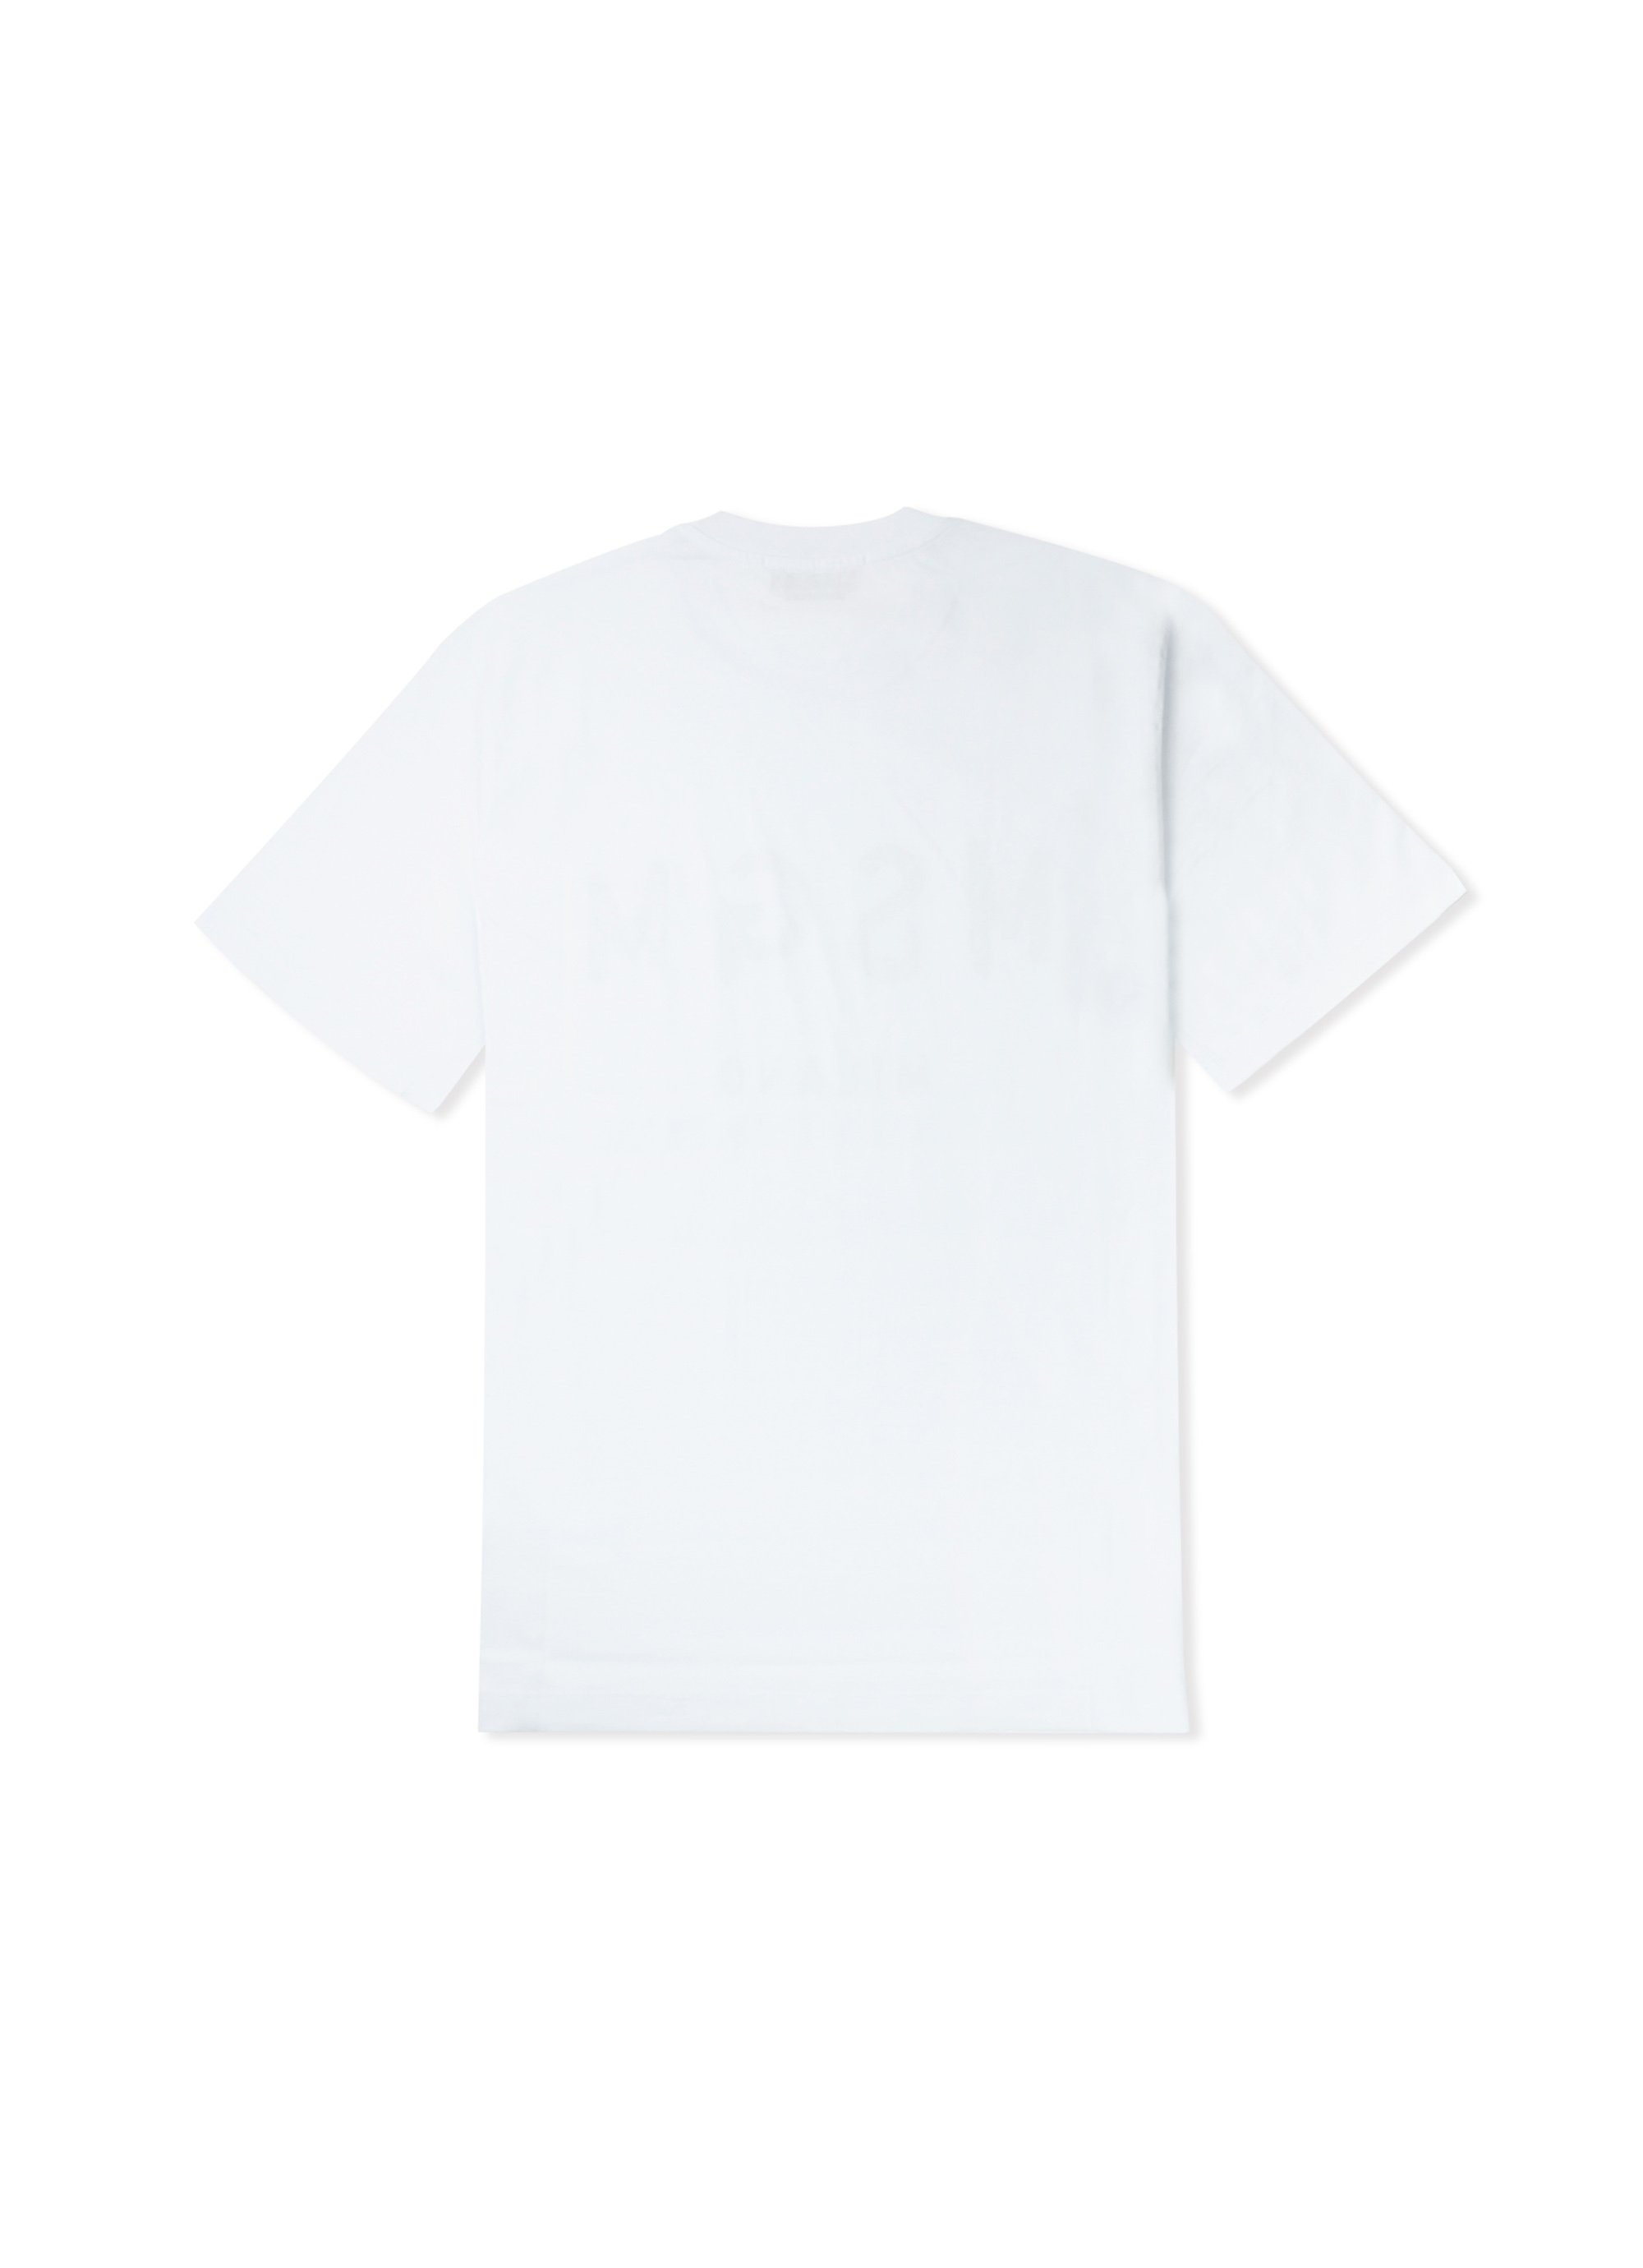 【NEW】ブラッシュロゴTシャツ 詳細画像 ホワイト 2